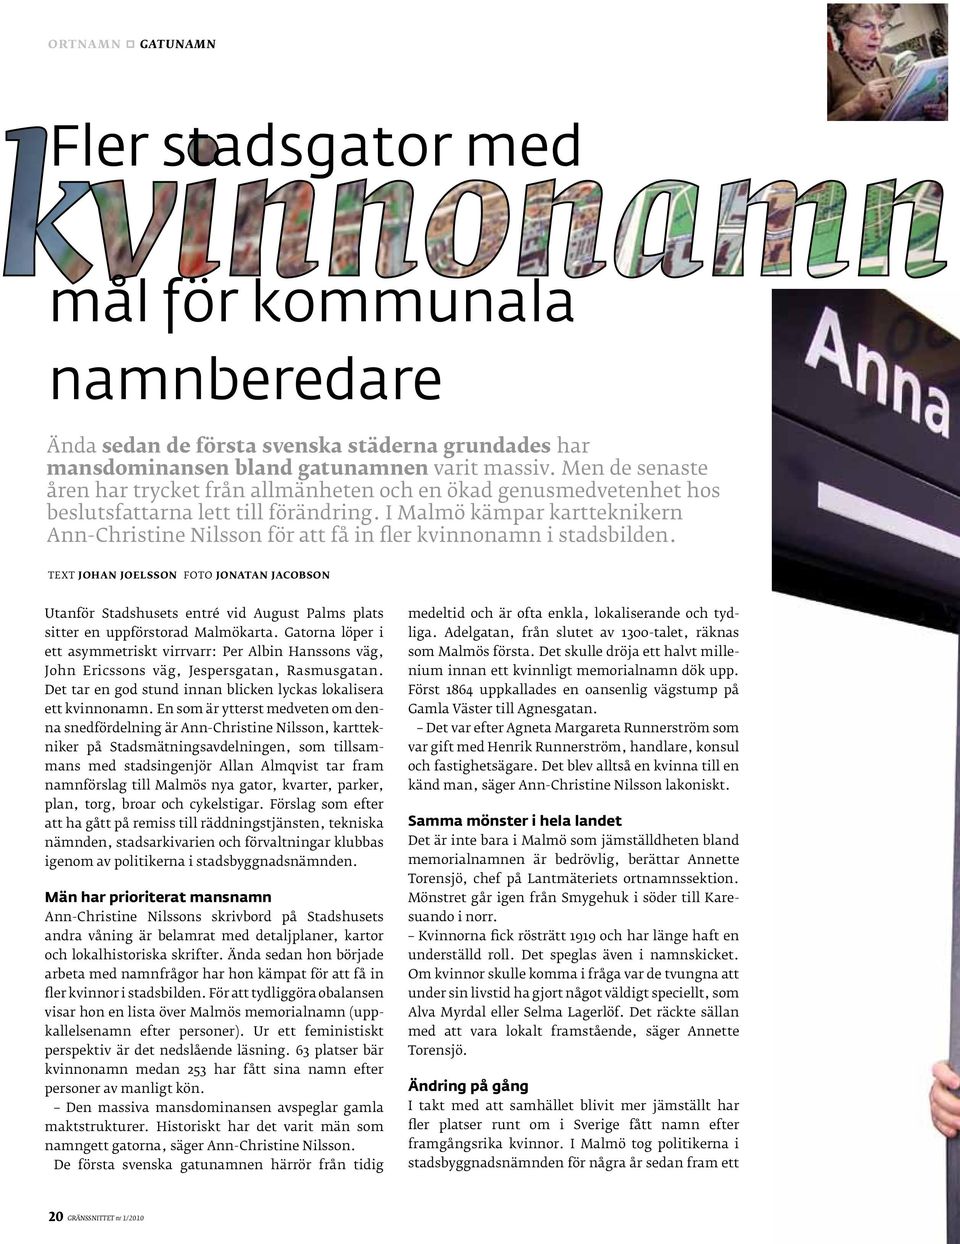 I Malmö kämpar kartteknikern Ann-Christine Nilsson för att få in fler kvinnonamn i stadsbilden.